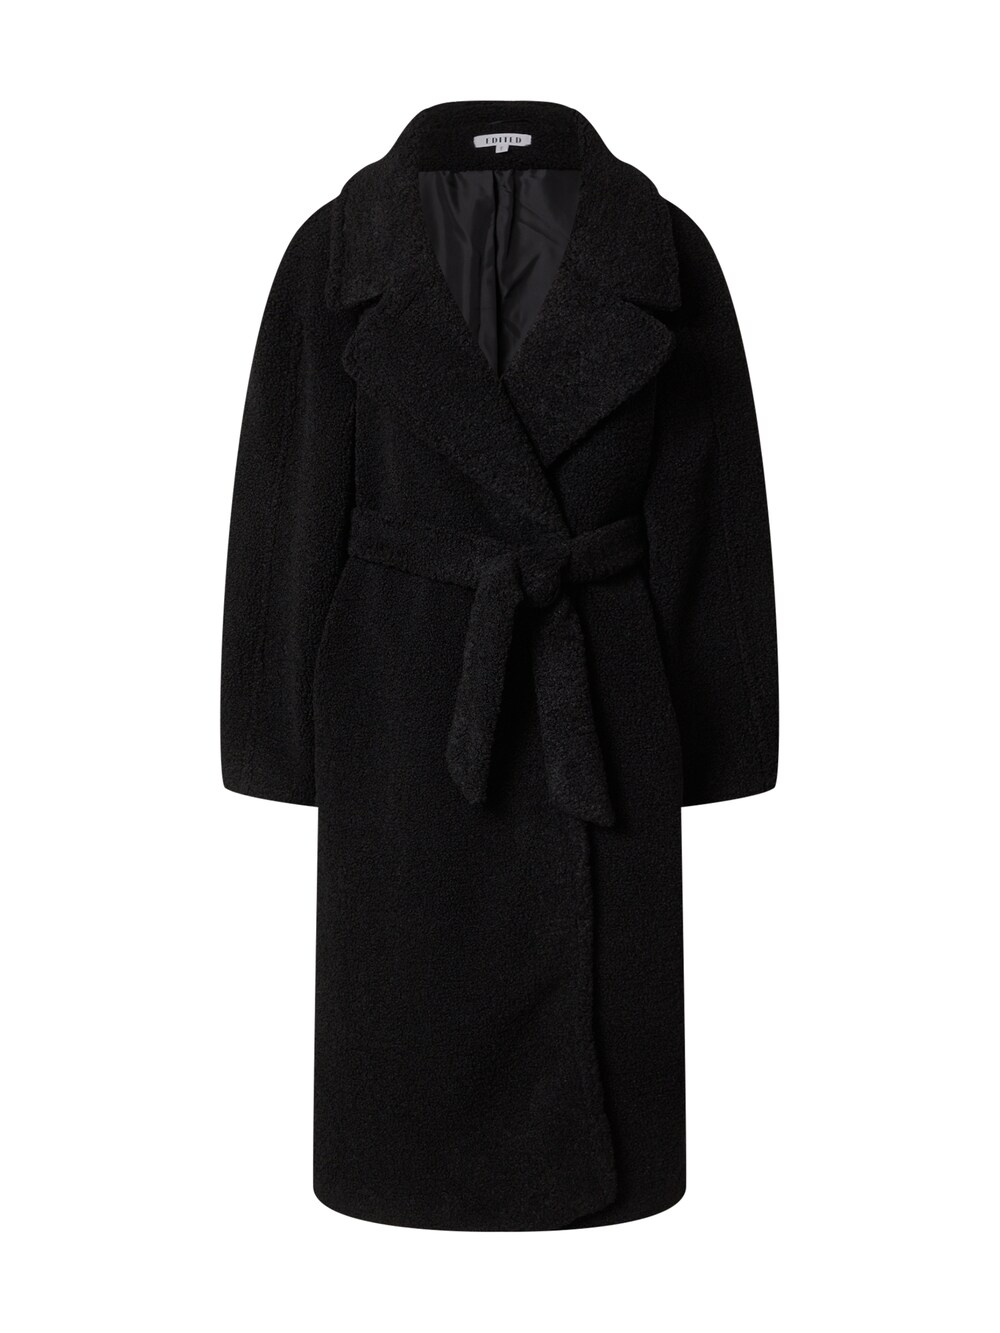 Межсезонное пальто EDITED Imelda, черный